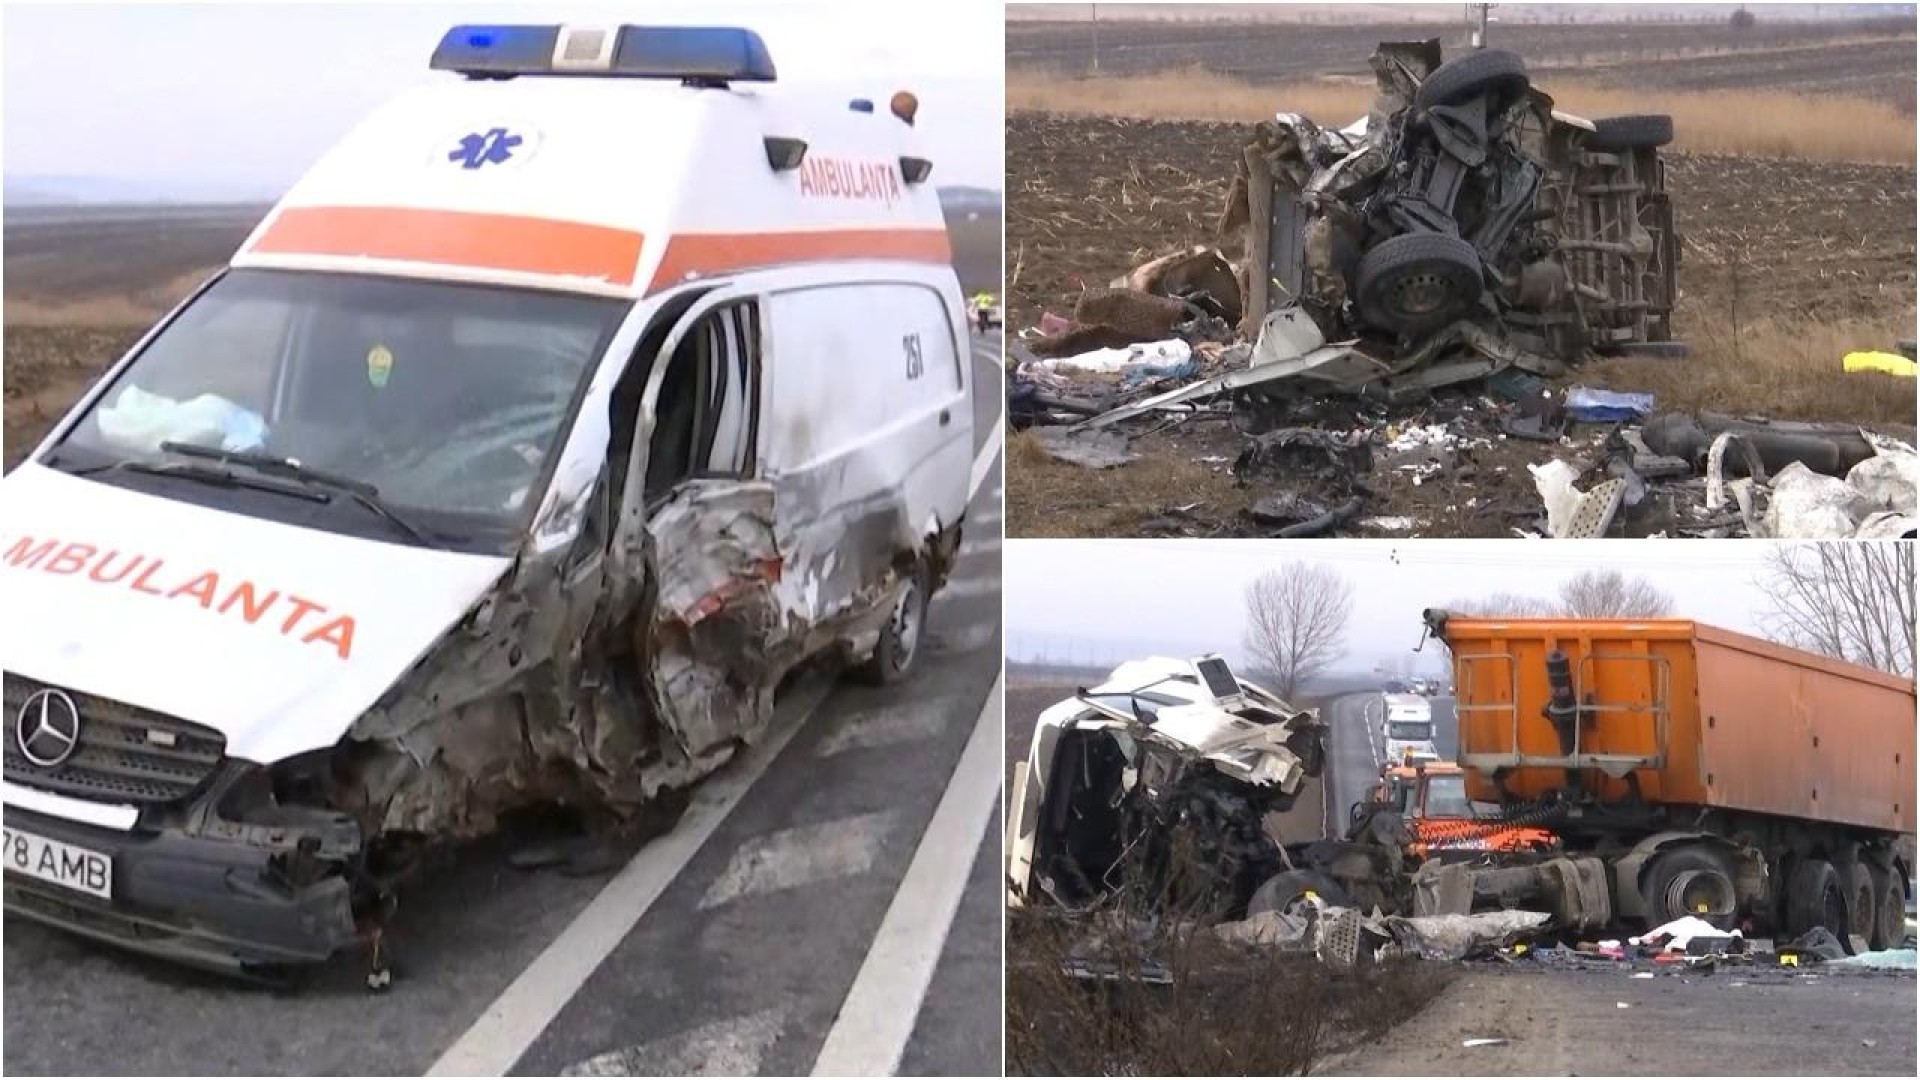 În accidentul cu 7 victime, șoferul de camion și-ar fi pierdut viața pentru că nu purta centură de siguranță